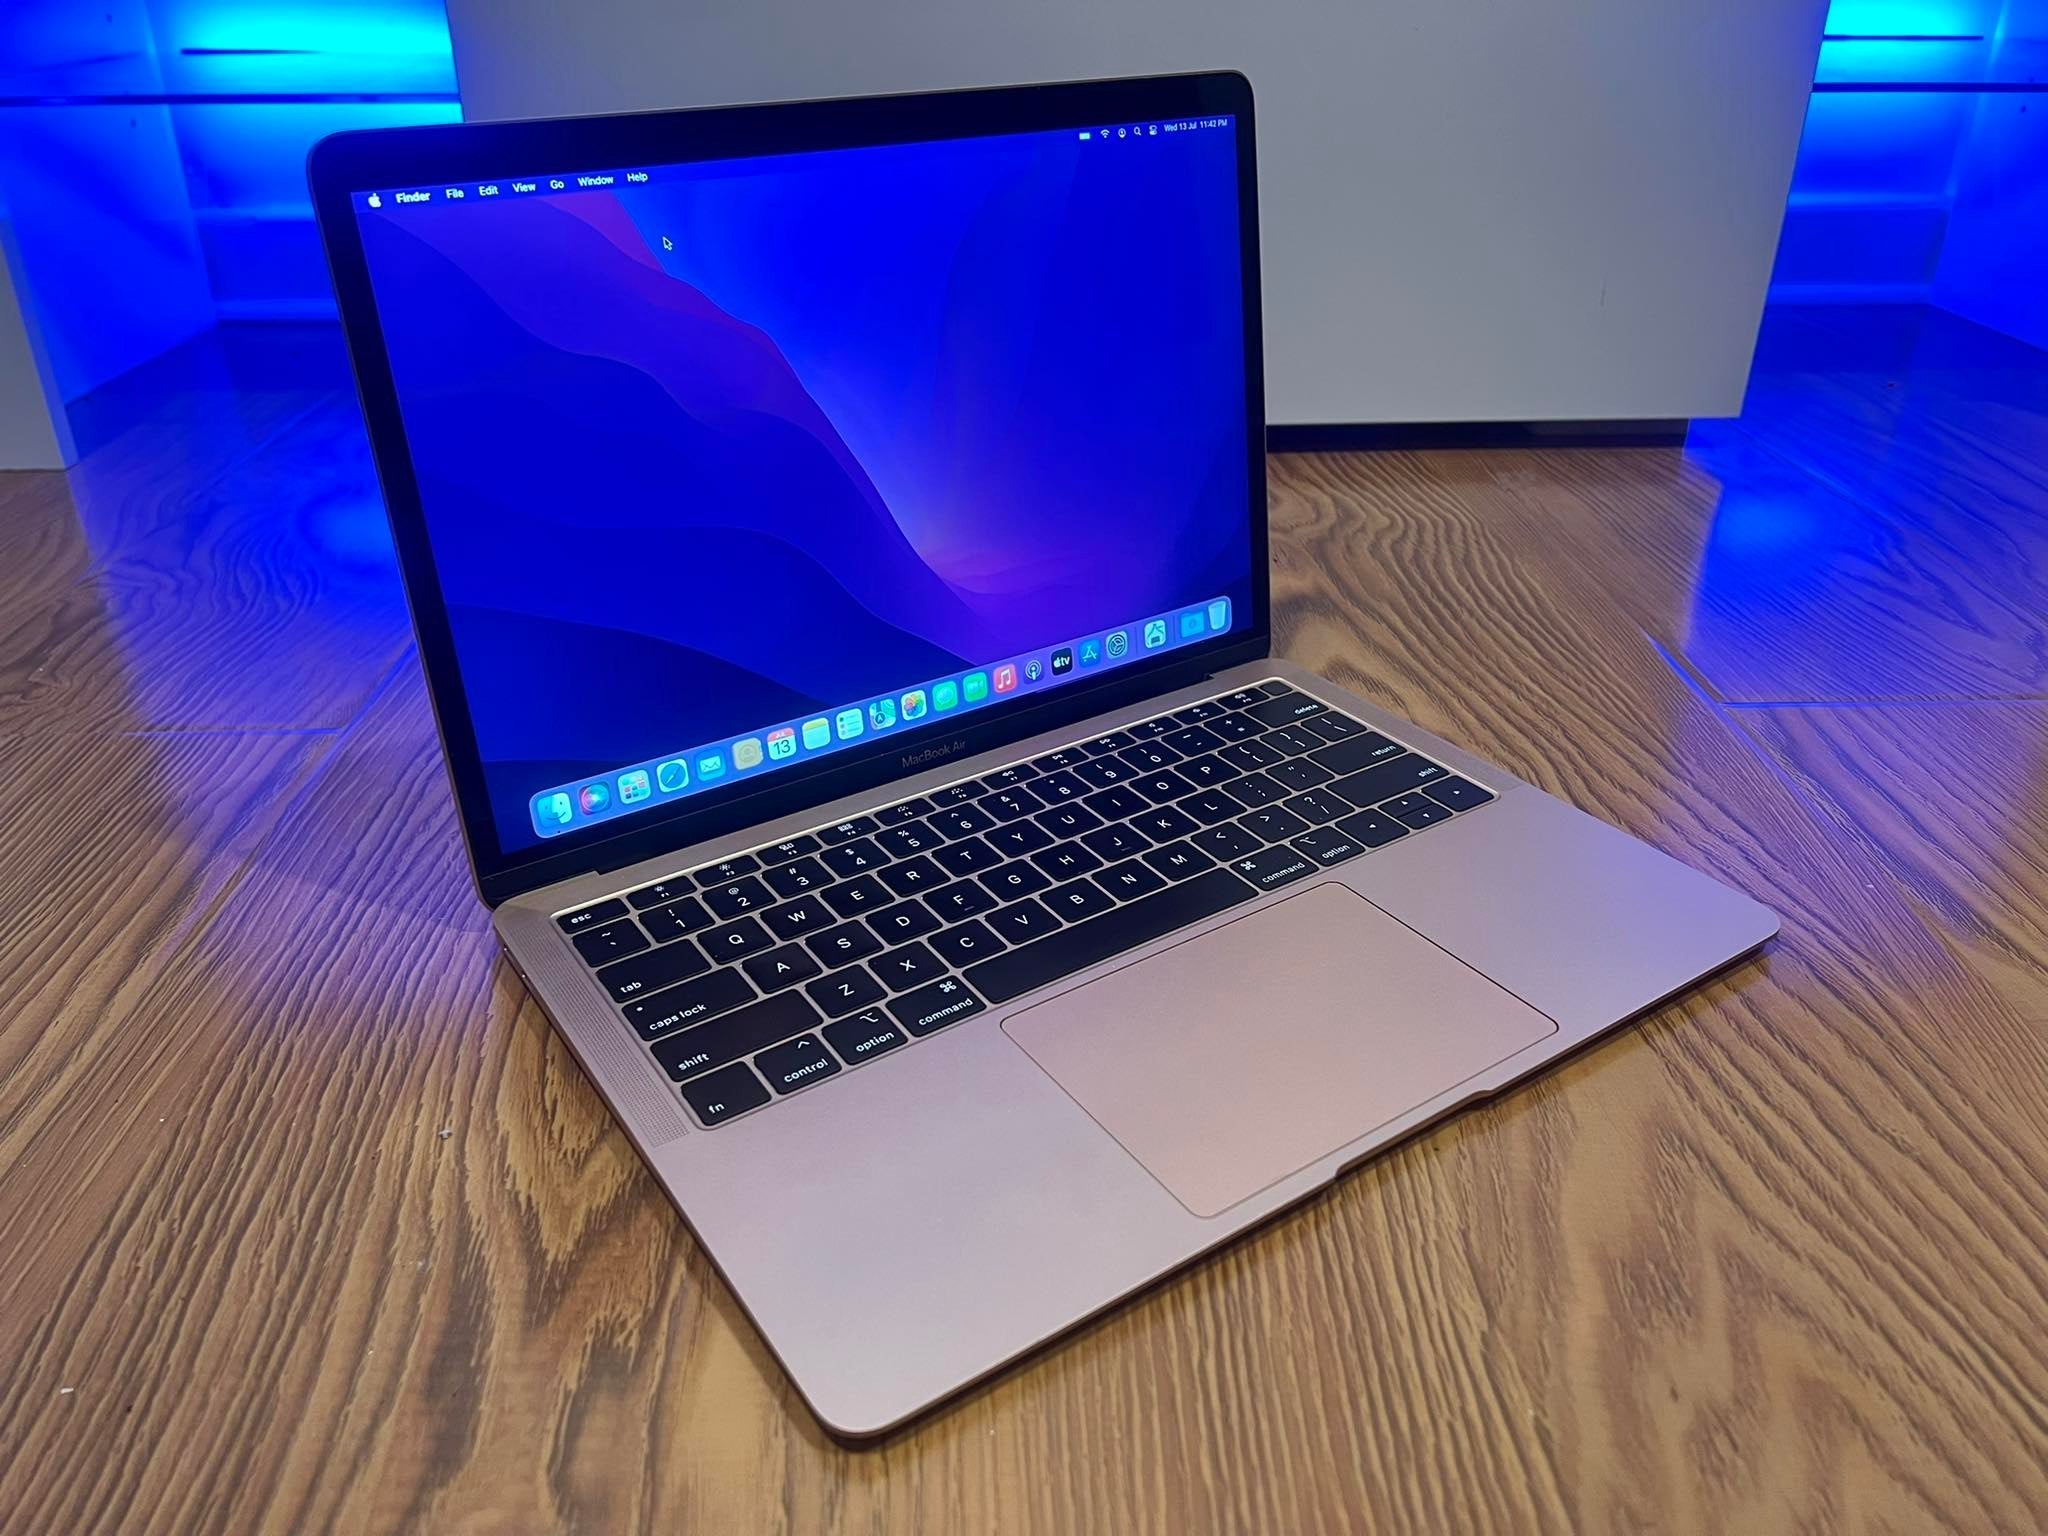 MacBook Air (Retina, 13-inch, 2020) Intel i5, 8GB RAM, 256GB (Premium Grade) A2179